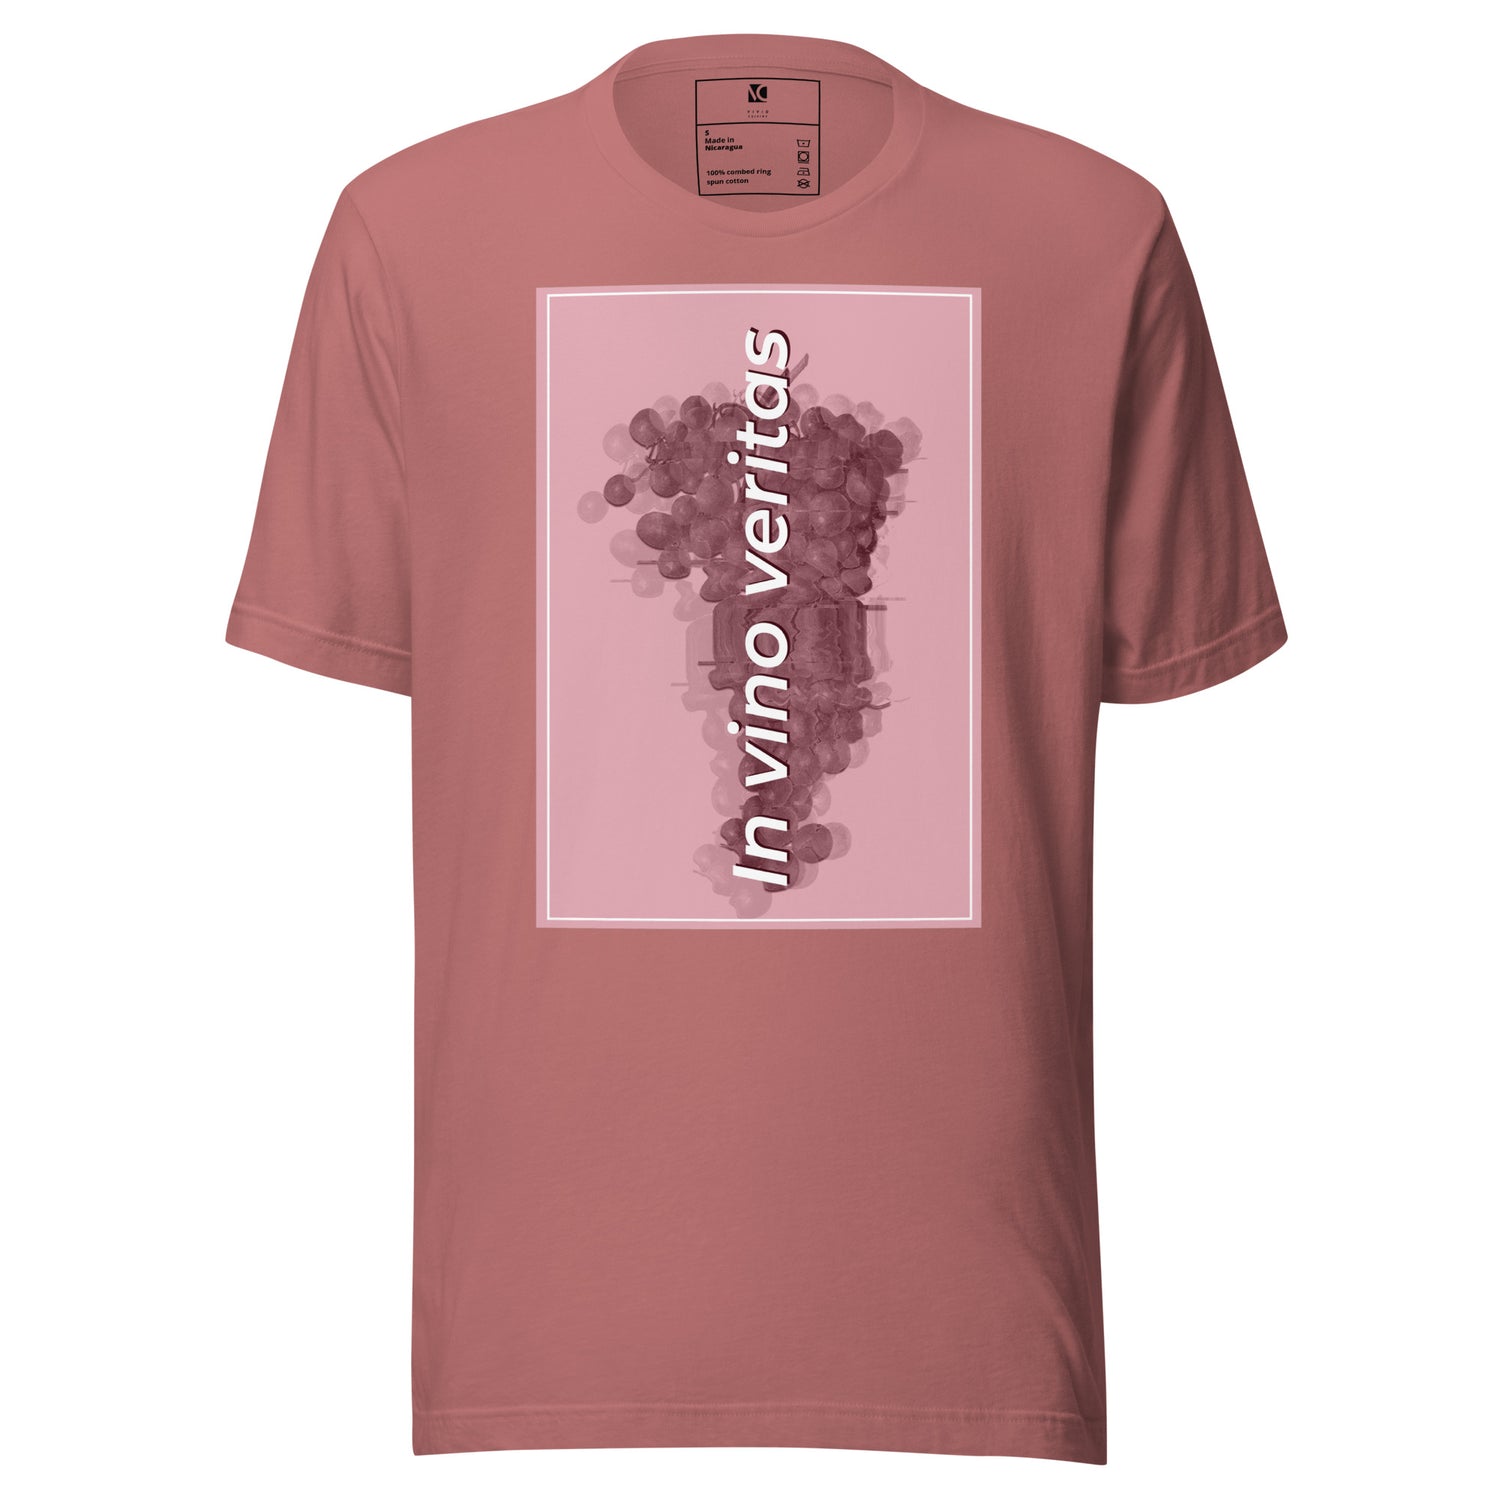 In Vino Veritas - Unisex T-Shirt